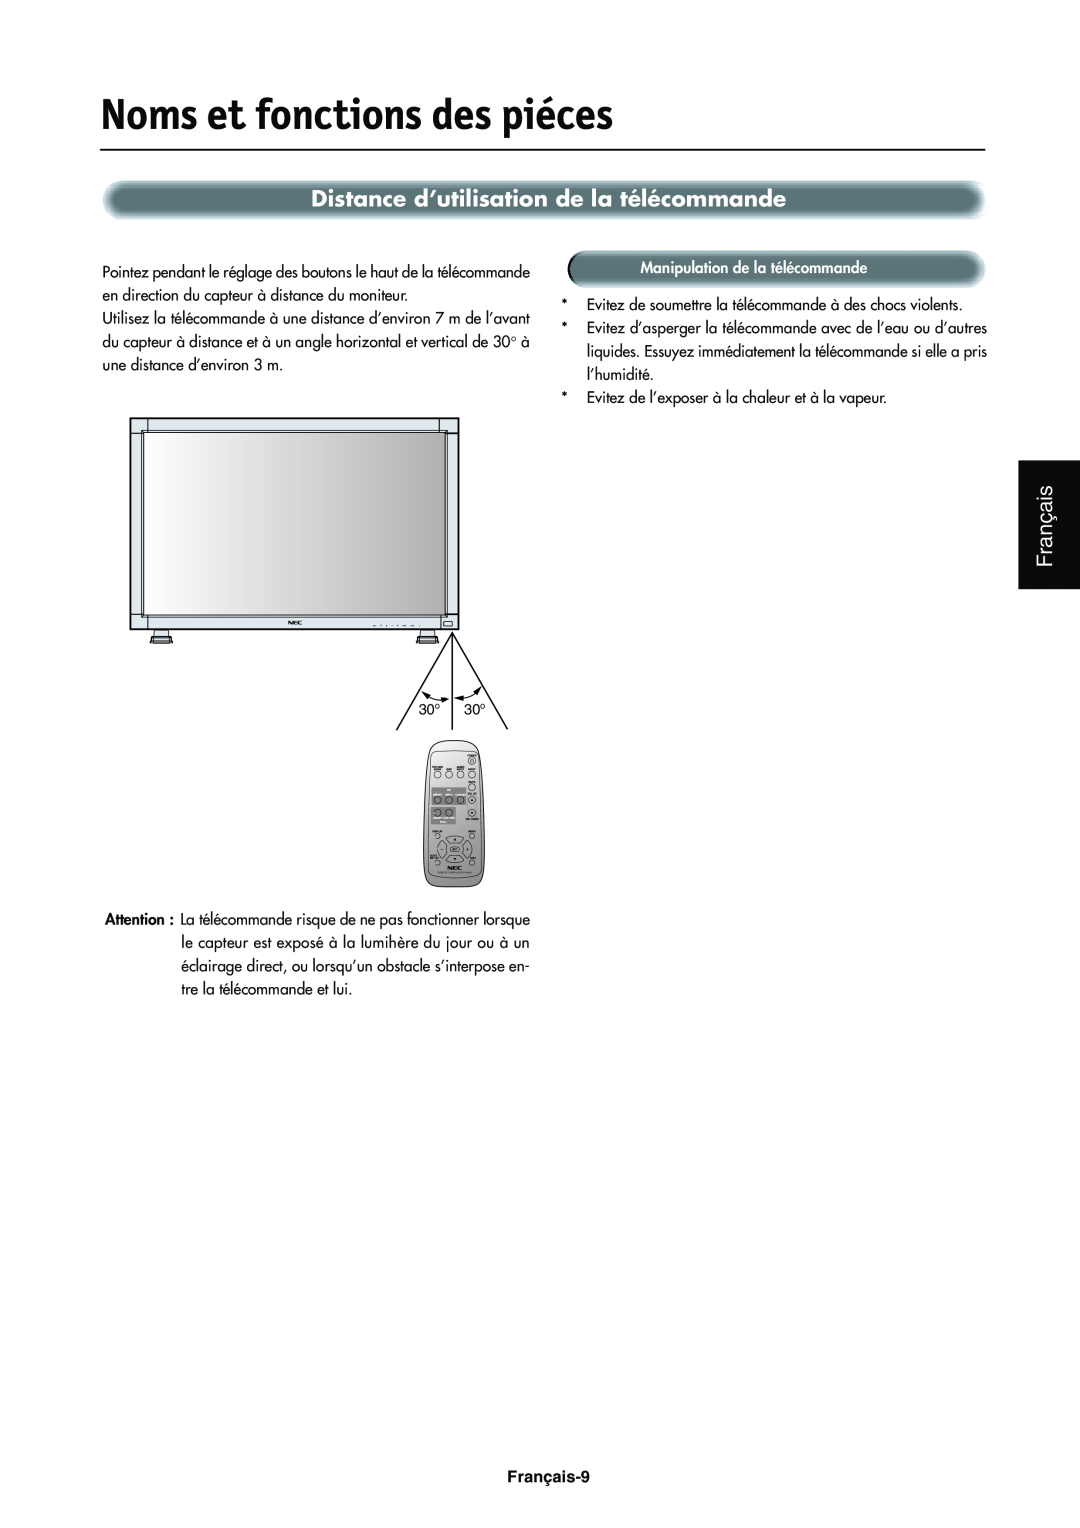 NEC LCD4000e manual Distance d’utilisation de la télécommande, Noms et fonctions des piéces, Français-9 